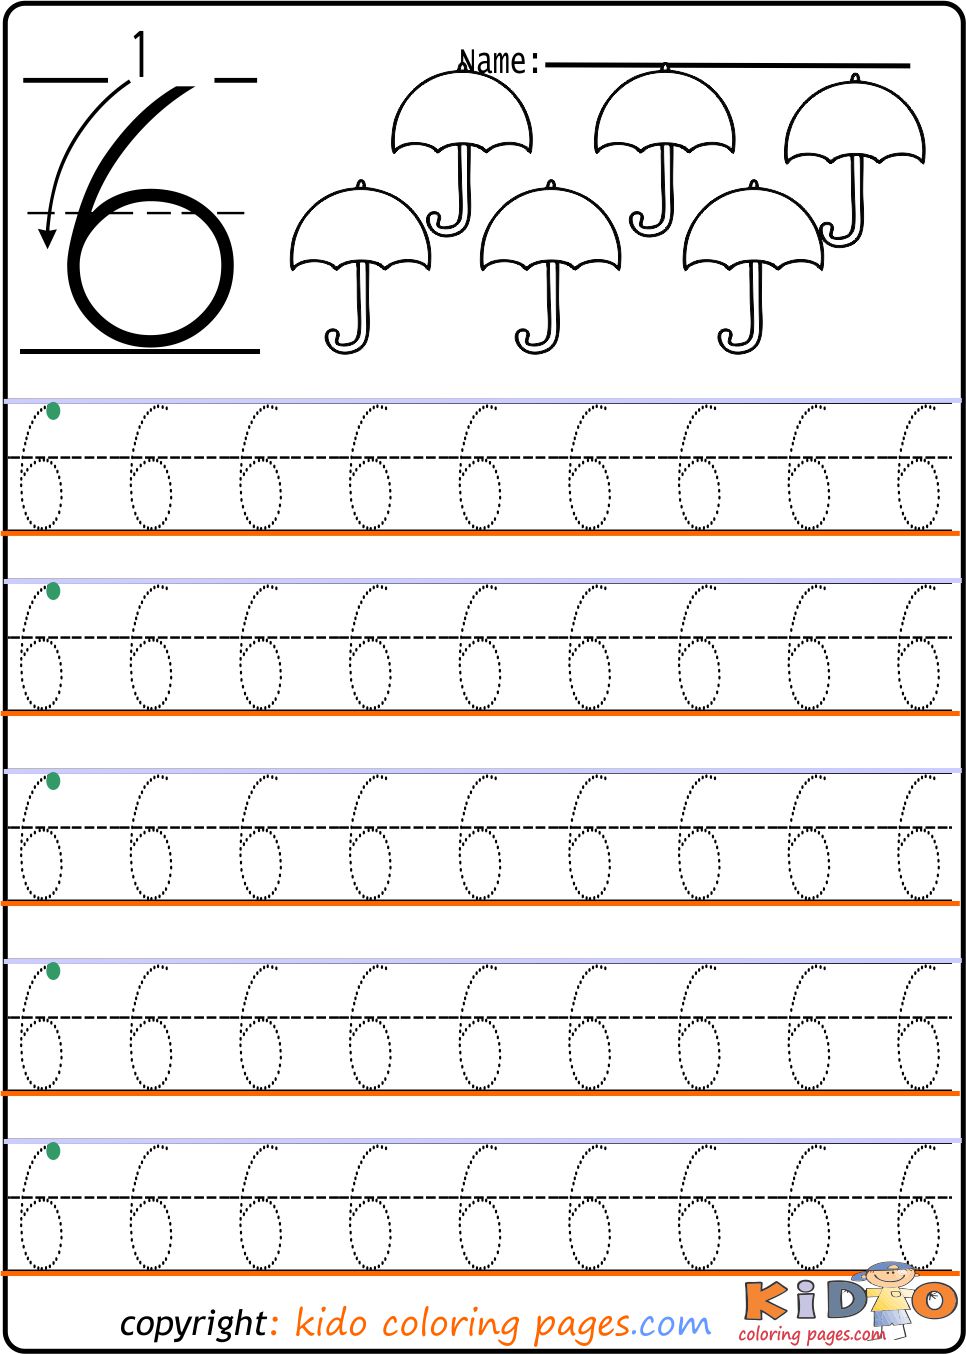 number-6-tracing-worksheets-for-kindergarten-kids-coloring-pages